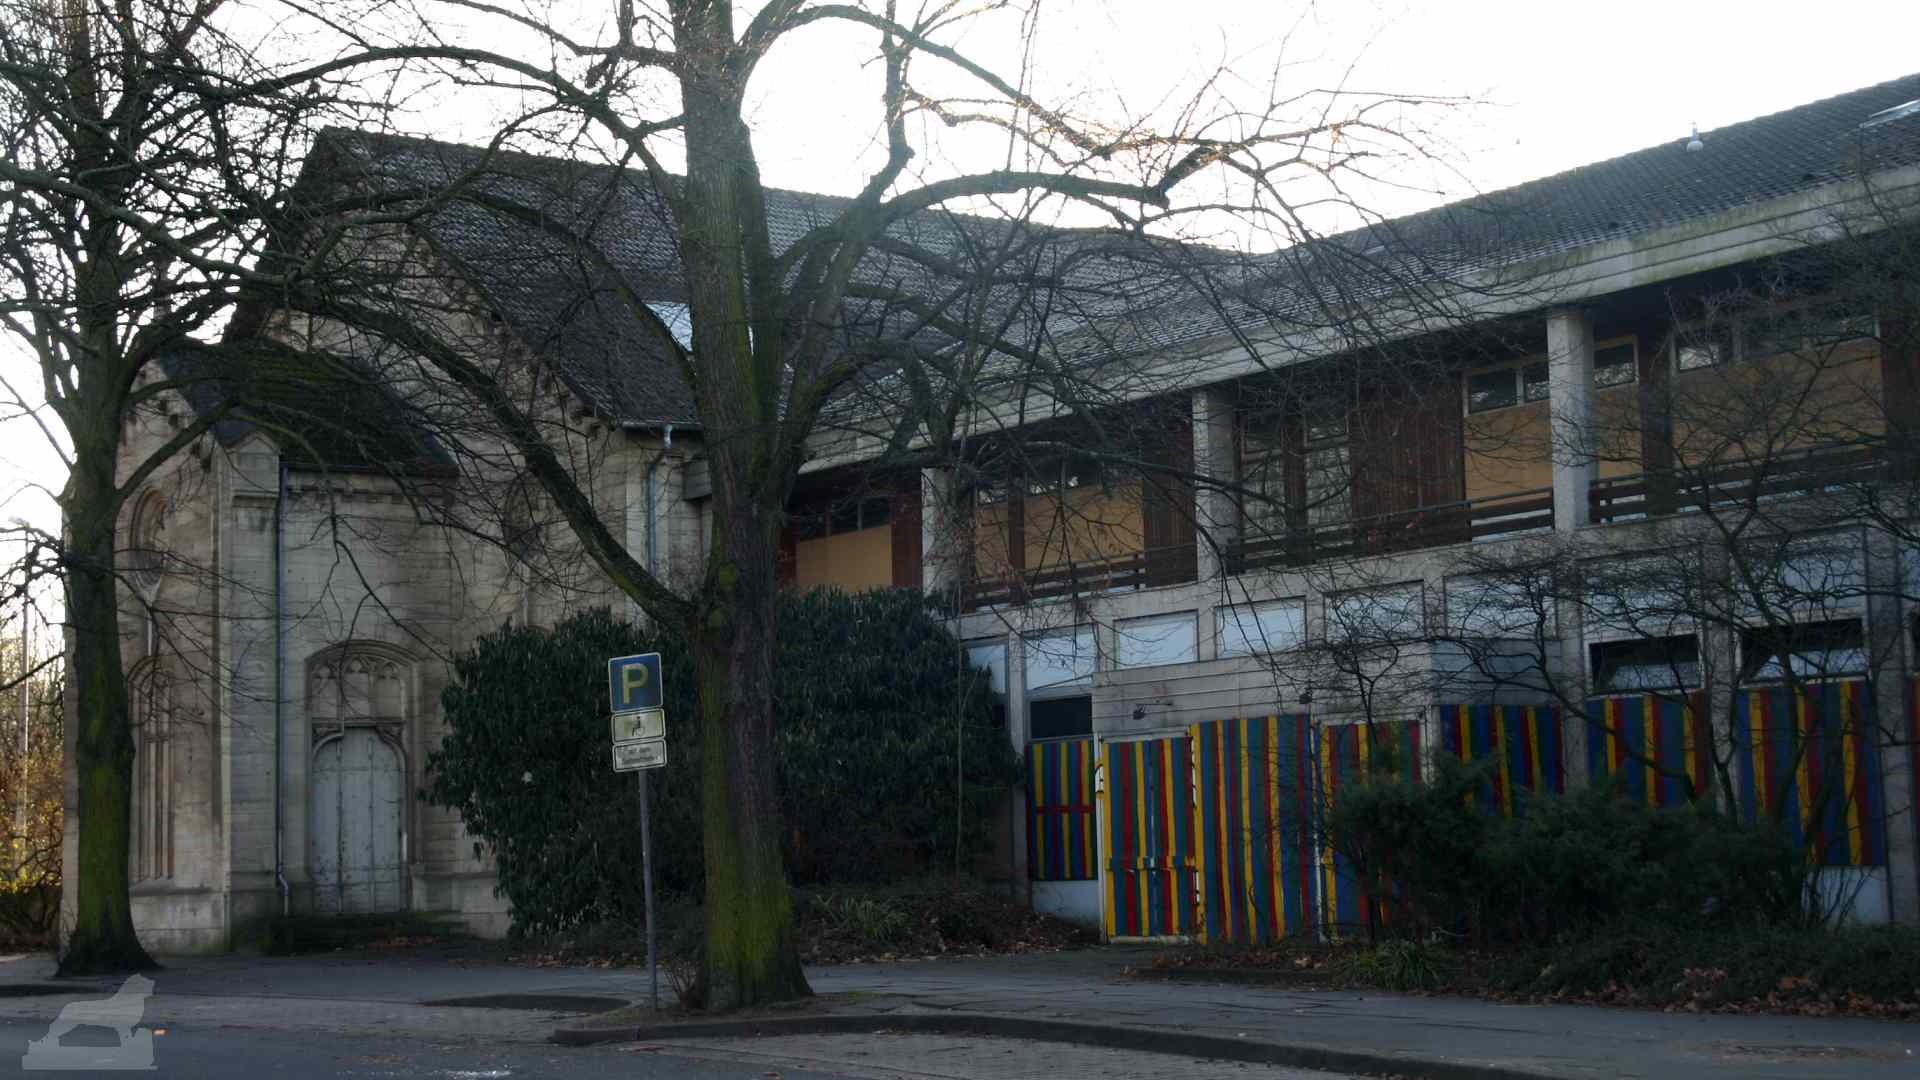 ehemaliges Freizeit und Bildungszentrum (FBZ) am Bürgerpark